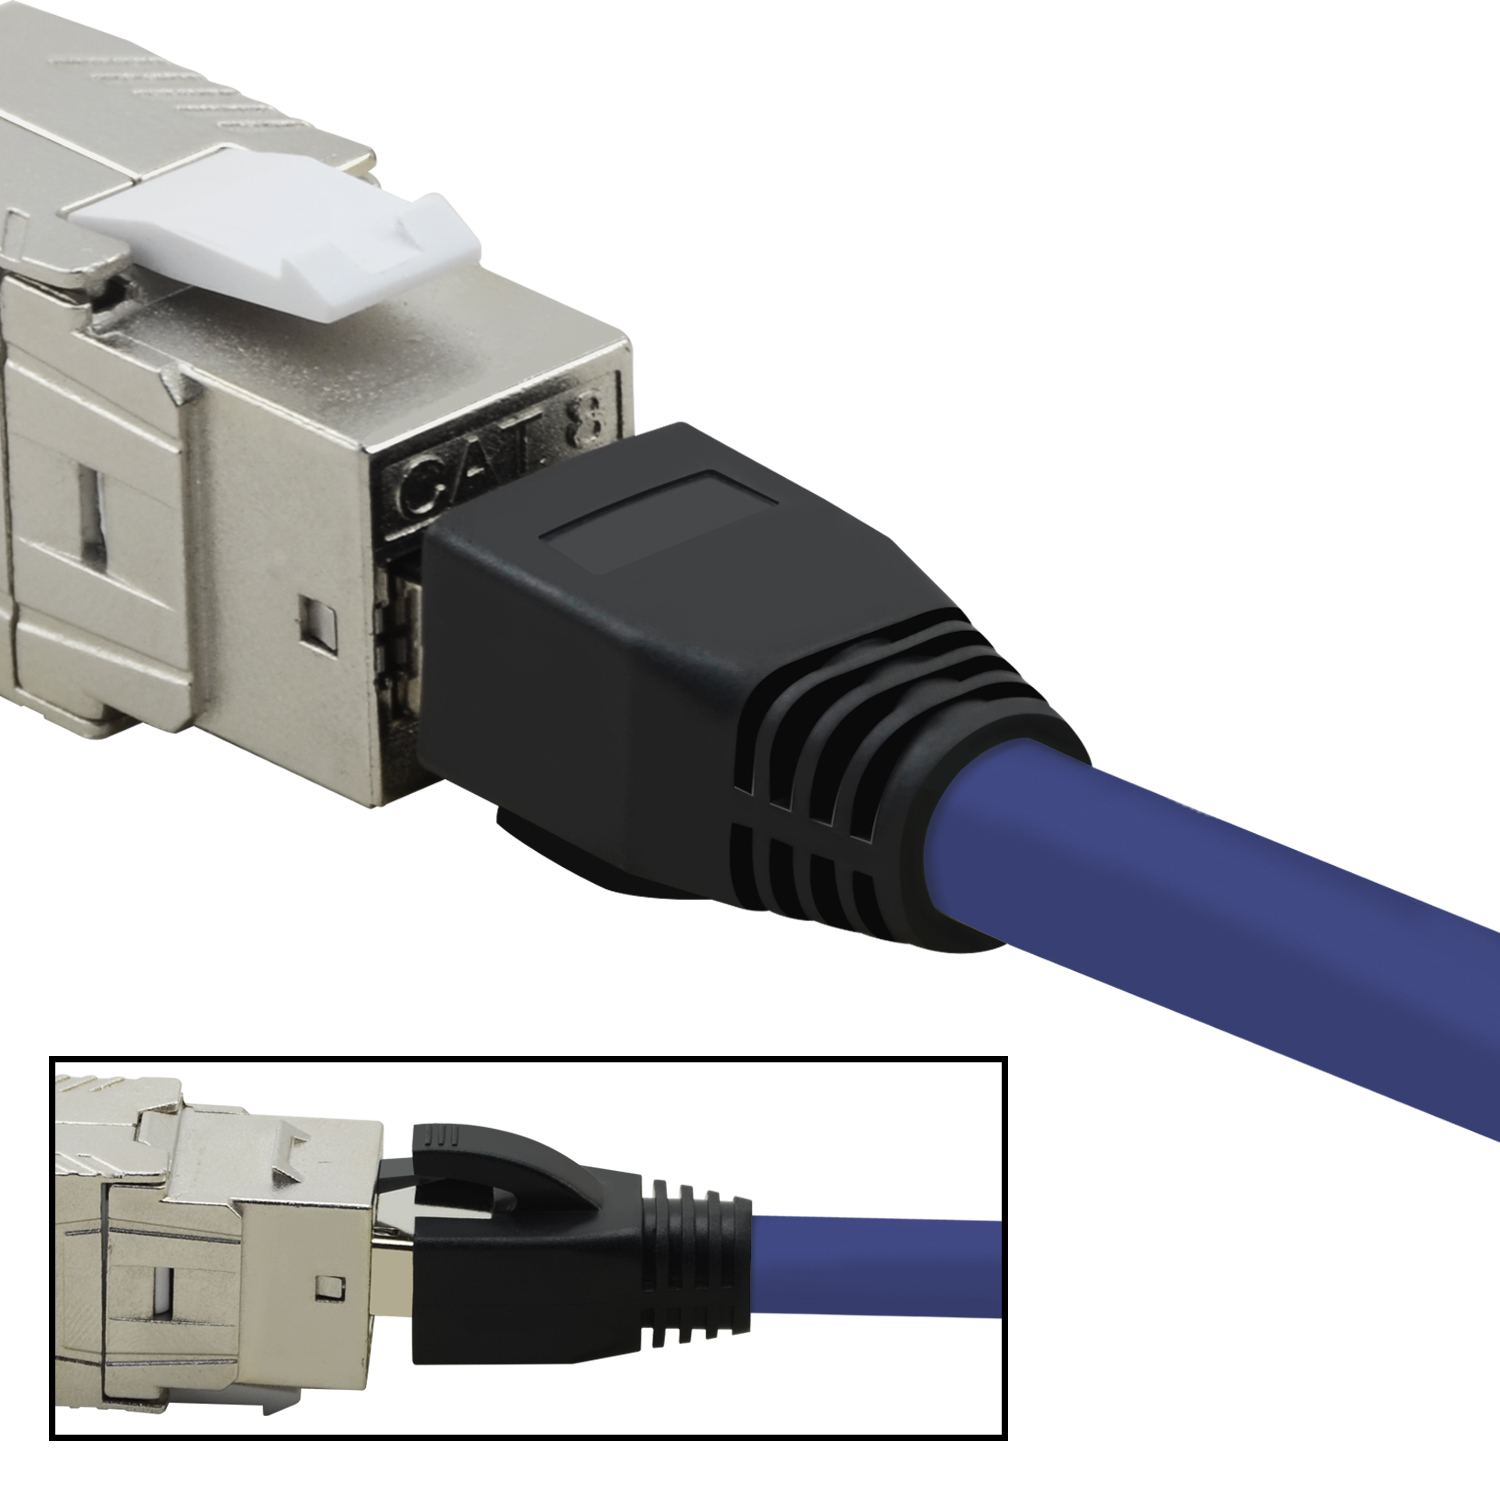 TPFNET 5er 40 S/FTP Patchkabel GBit, 3 Netzwerkkabel, / violett, 3m Pack m Netzwerkkabel